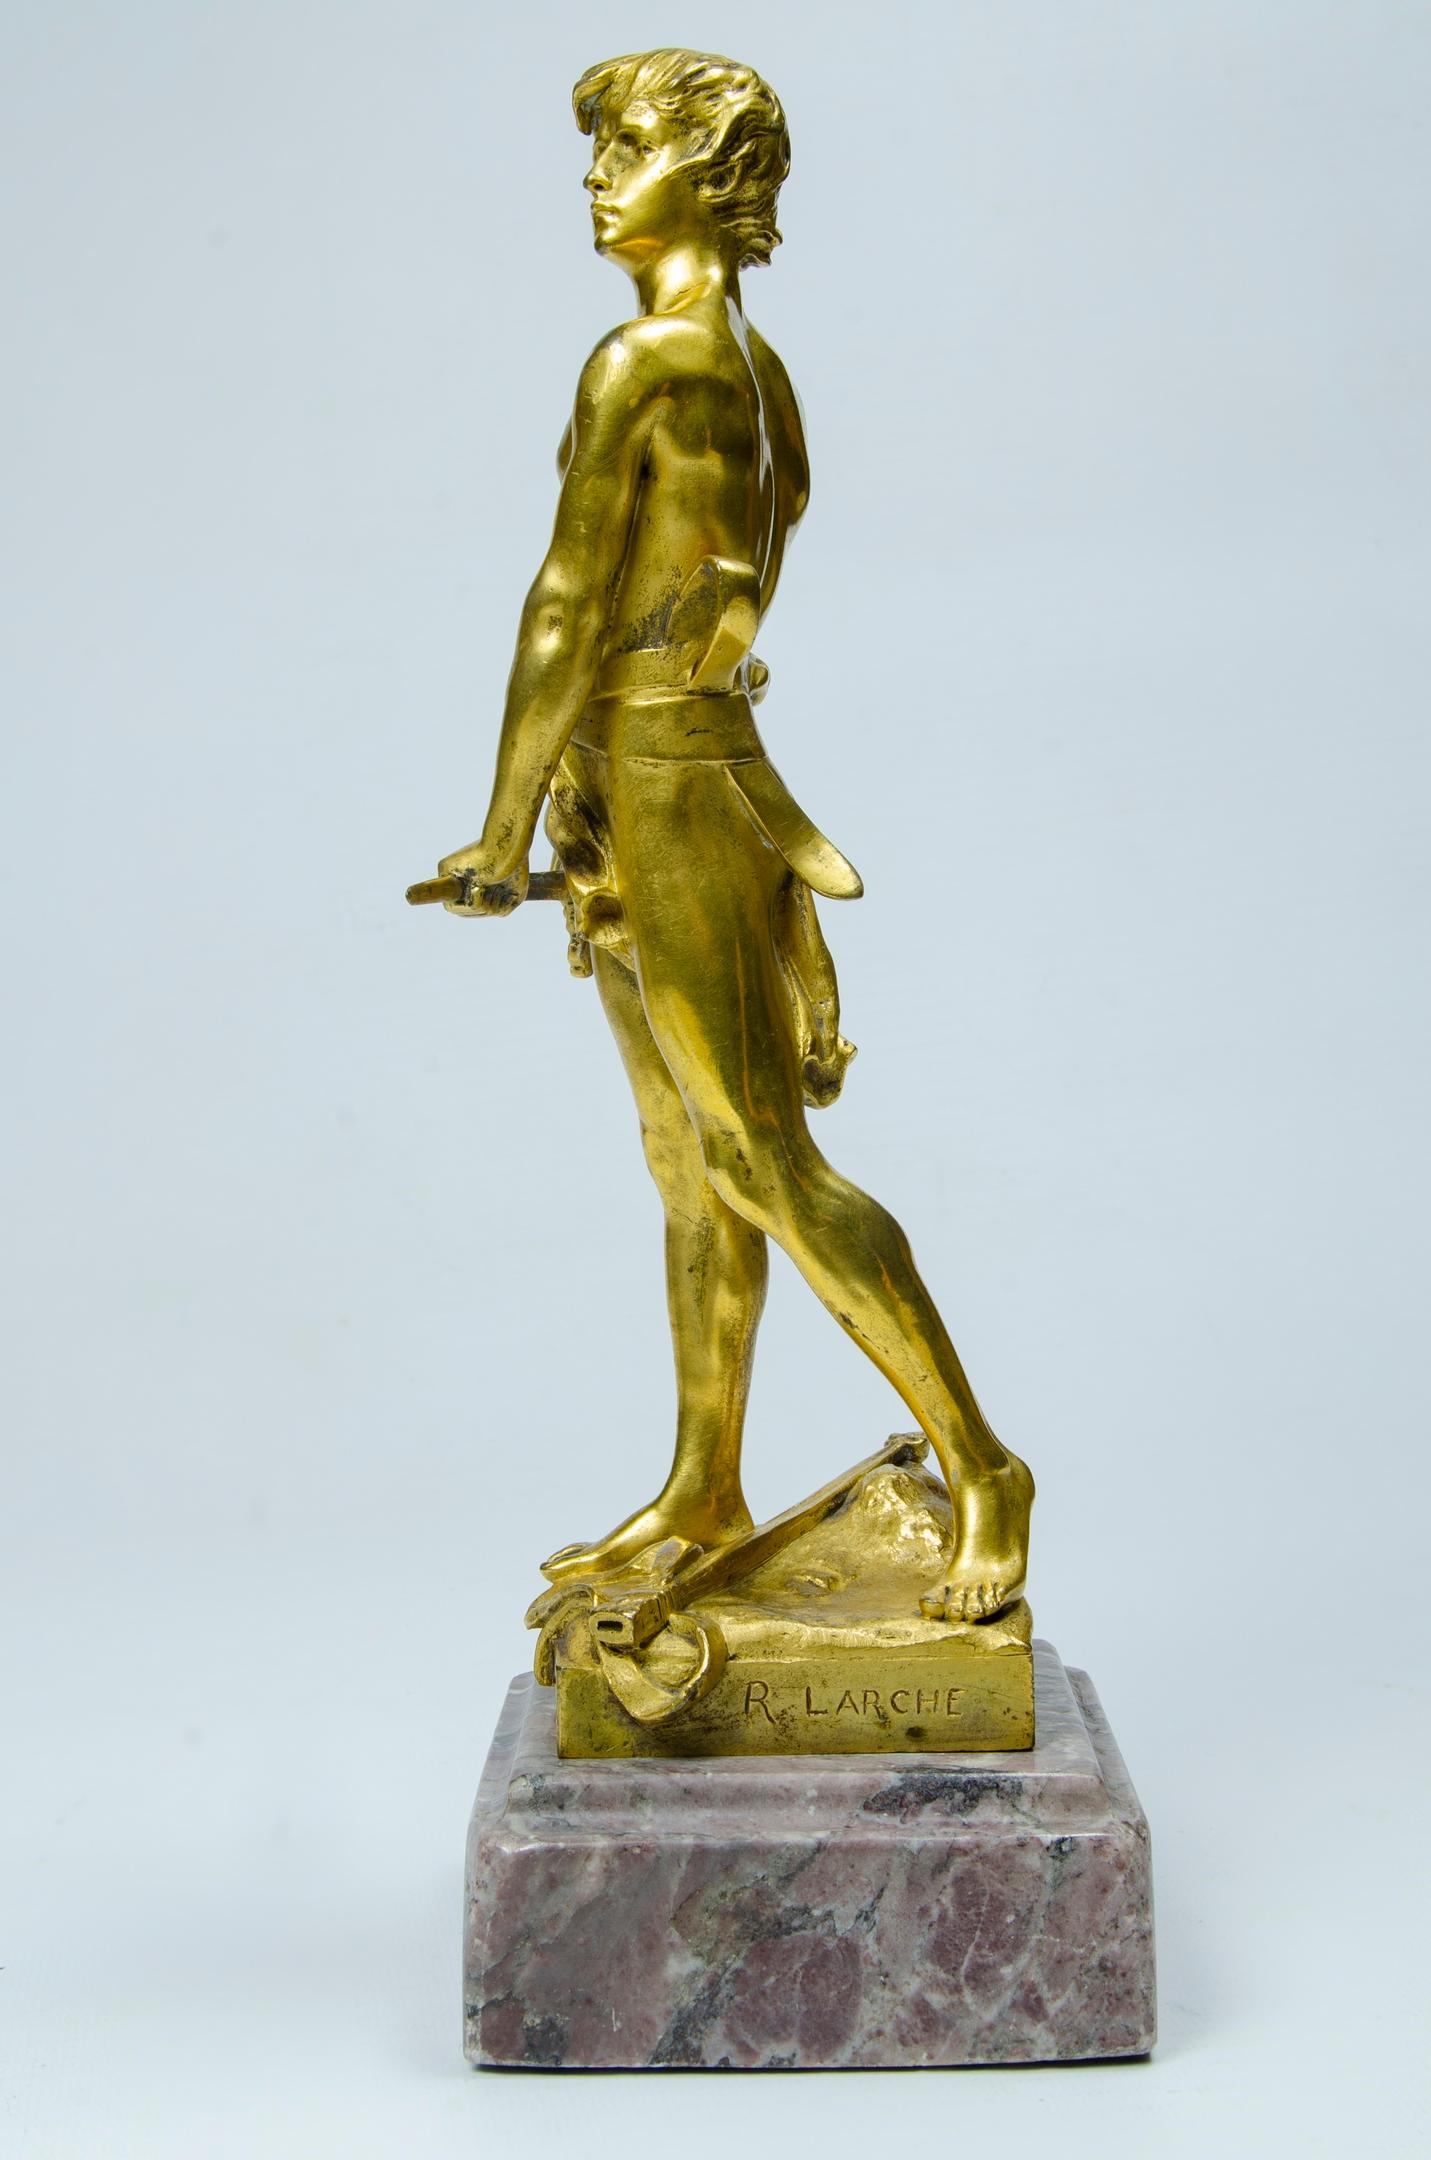 Raul Larche fonte de bronze Siot Decaville
Raul Larche 1860-1912
Titre : Les 20 ans
patine dorée usure naturelle.